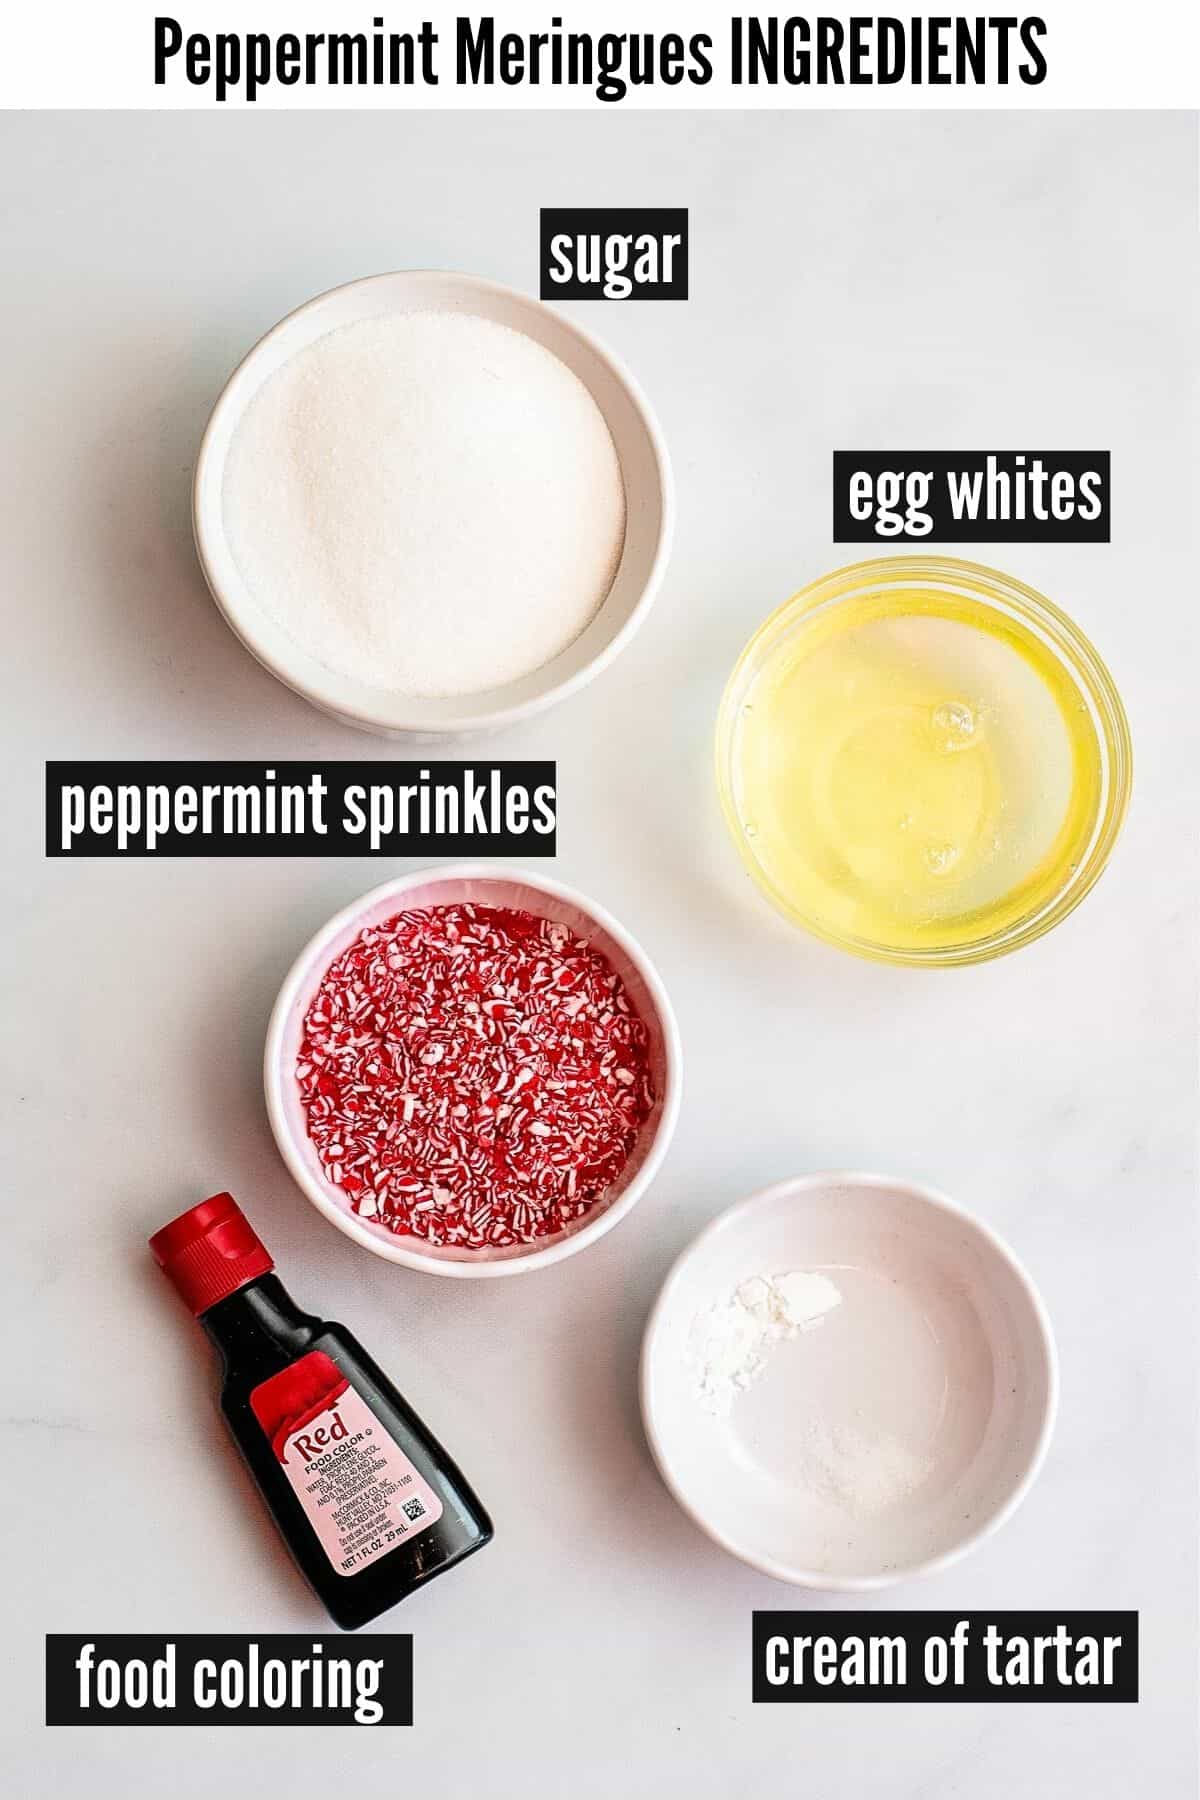 peppermint meringues labelled ingredients